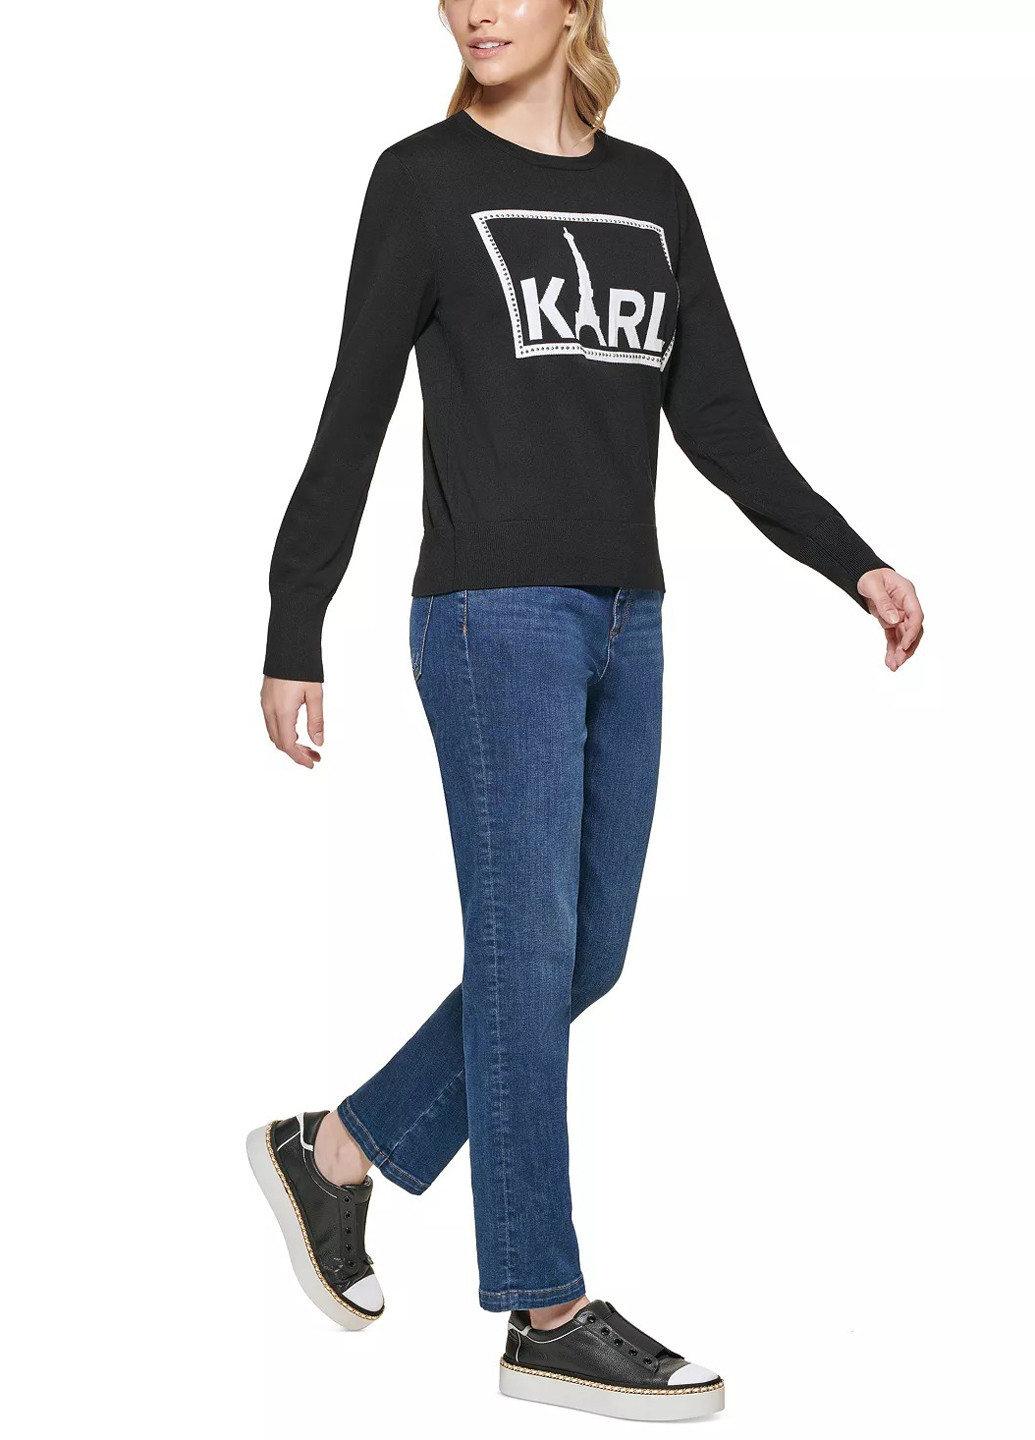 Чорний демісезонний светр джемпер Karl Lagerfeld